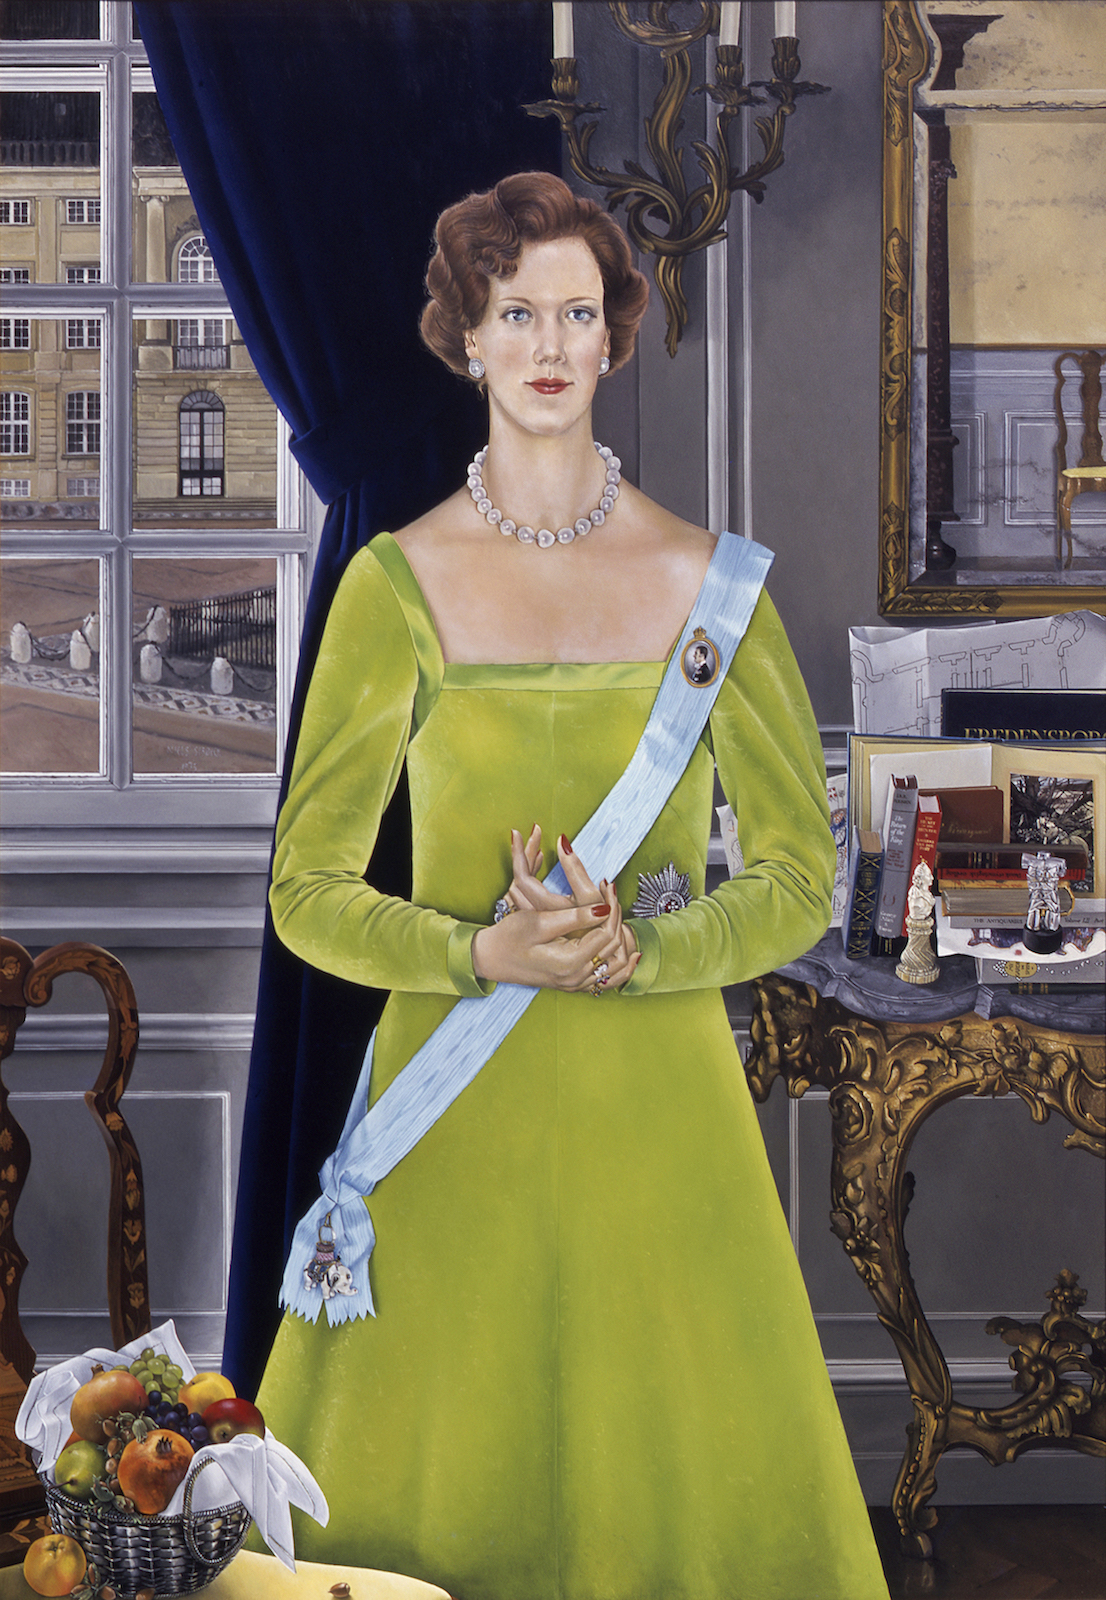 H.M. Dronning Margrethe II 1940-2020 - kunsten.nu - Online magasin og kalender billedkunst